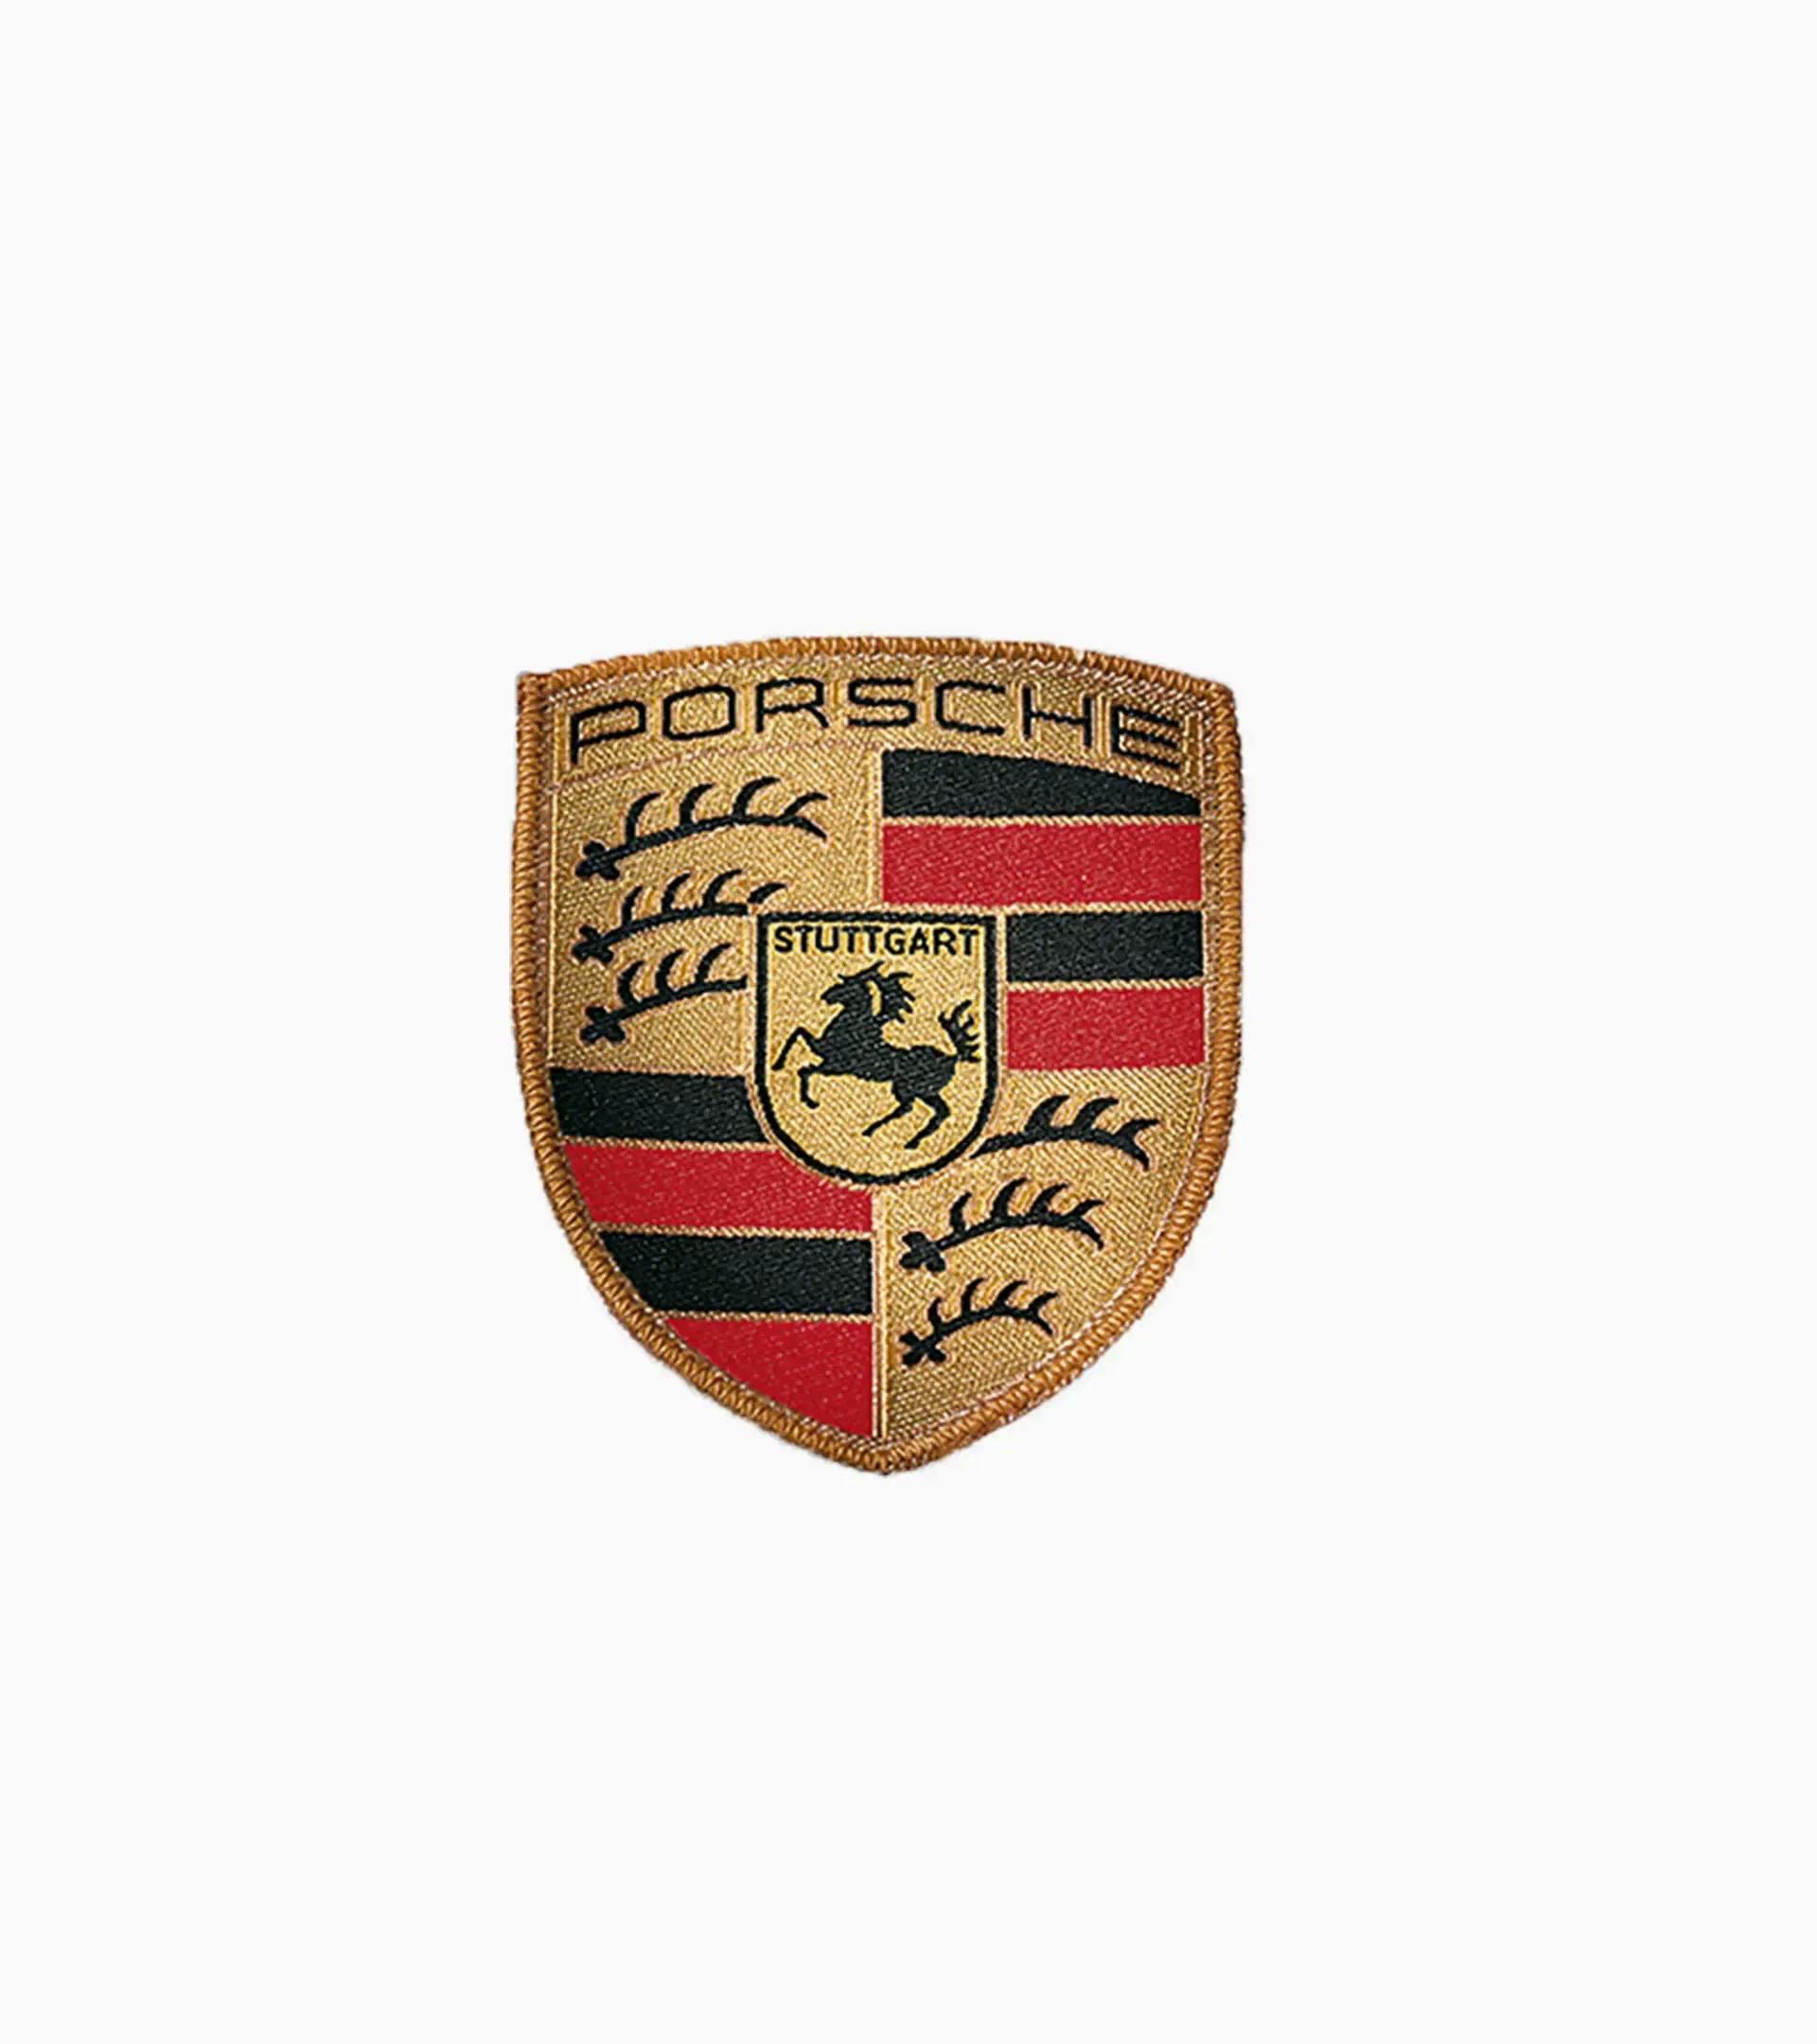 Porsche logo embroidery design